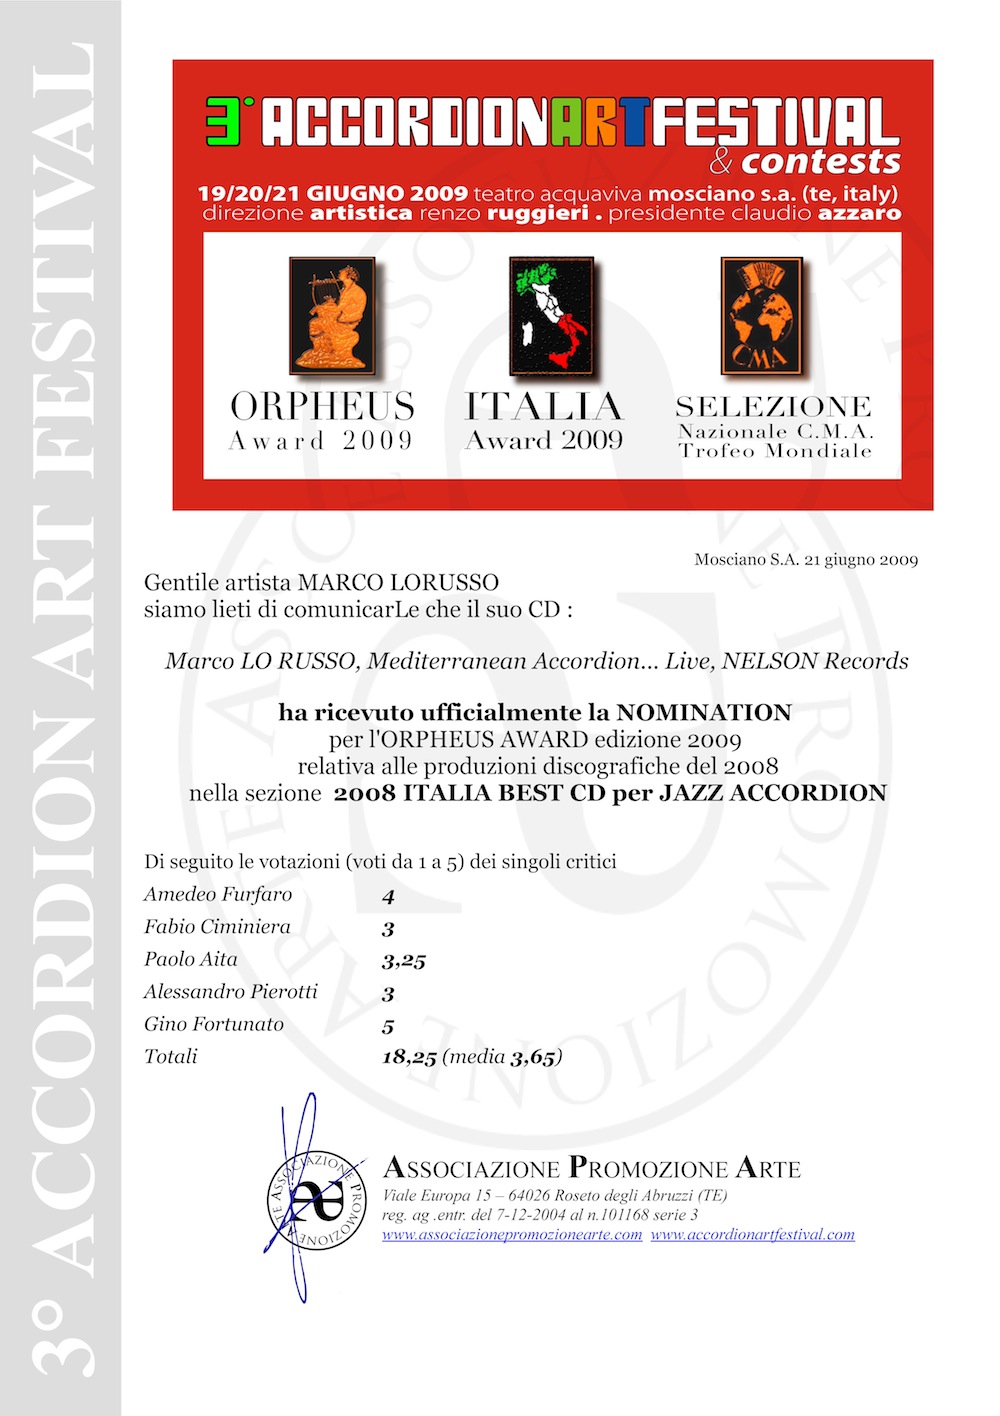 Nomination Orpheus Music Award 2009